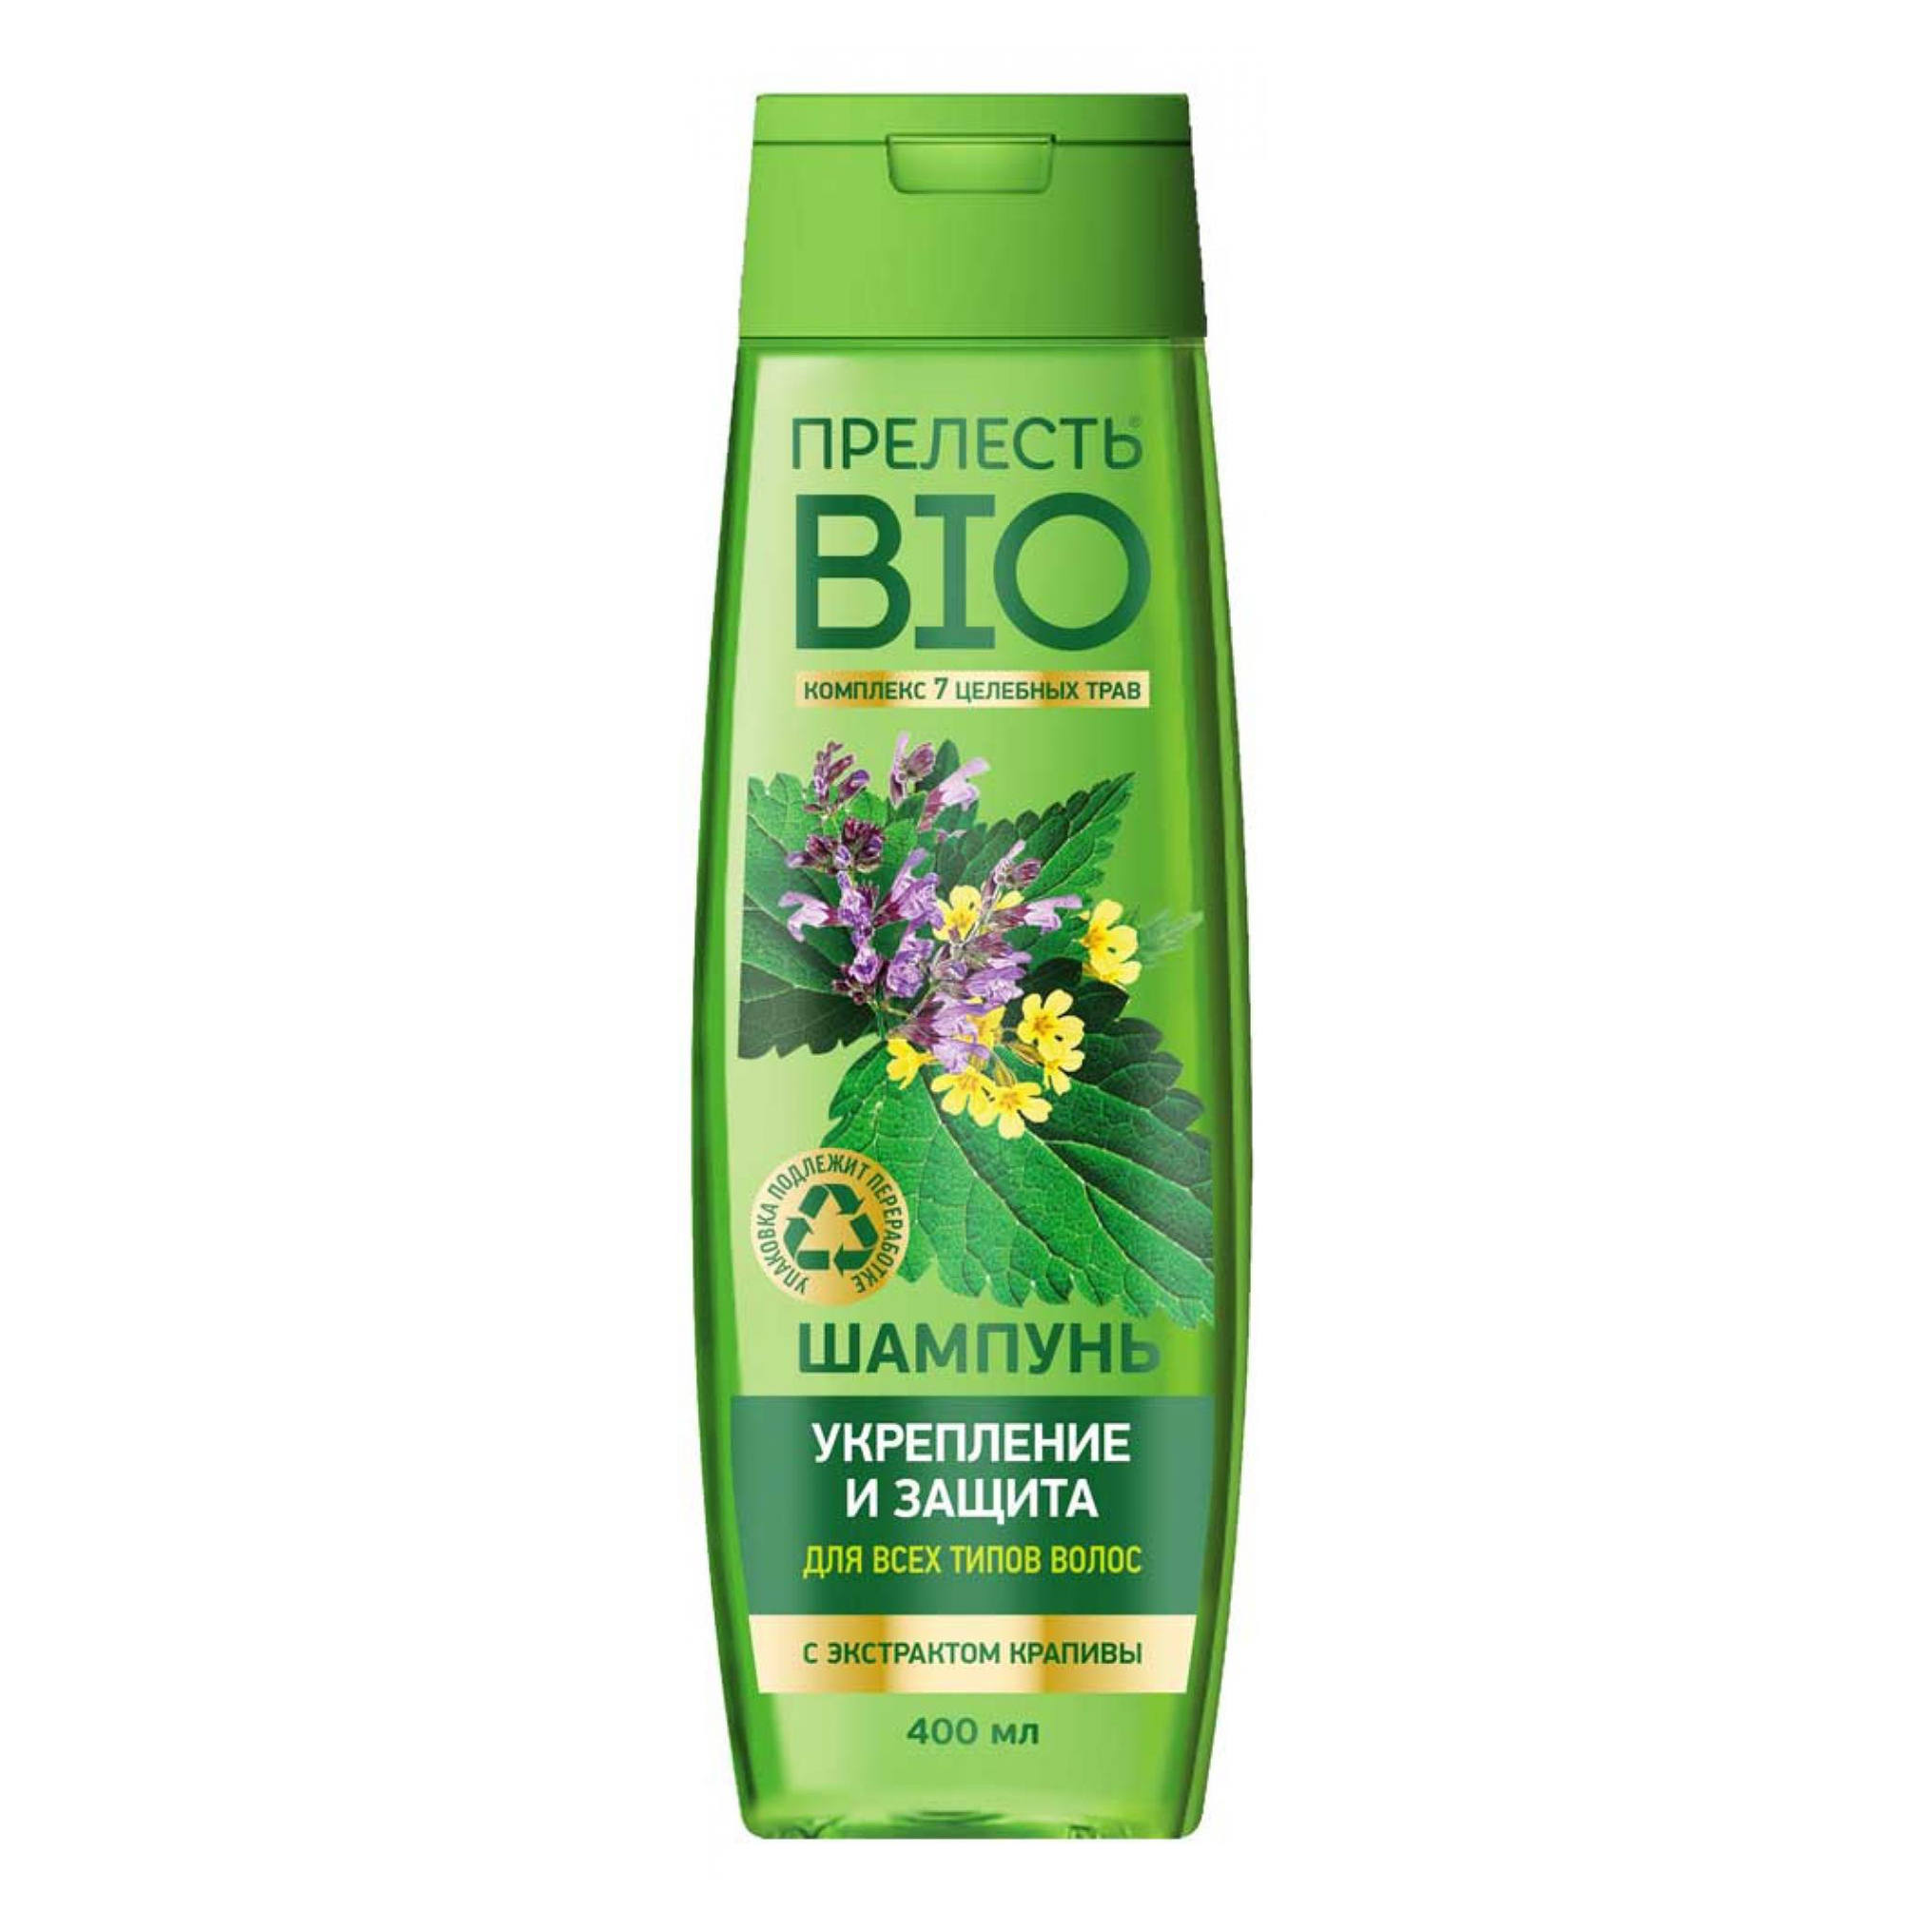 Купить Шампунь Прелесть Bio Укрепление и защита с экстрактом крапивы для всех типов волос 400 мл